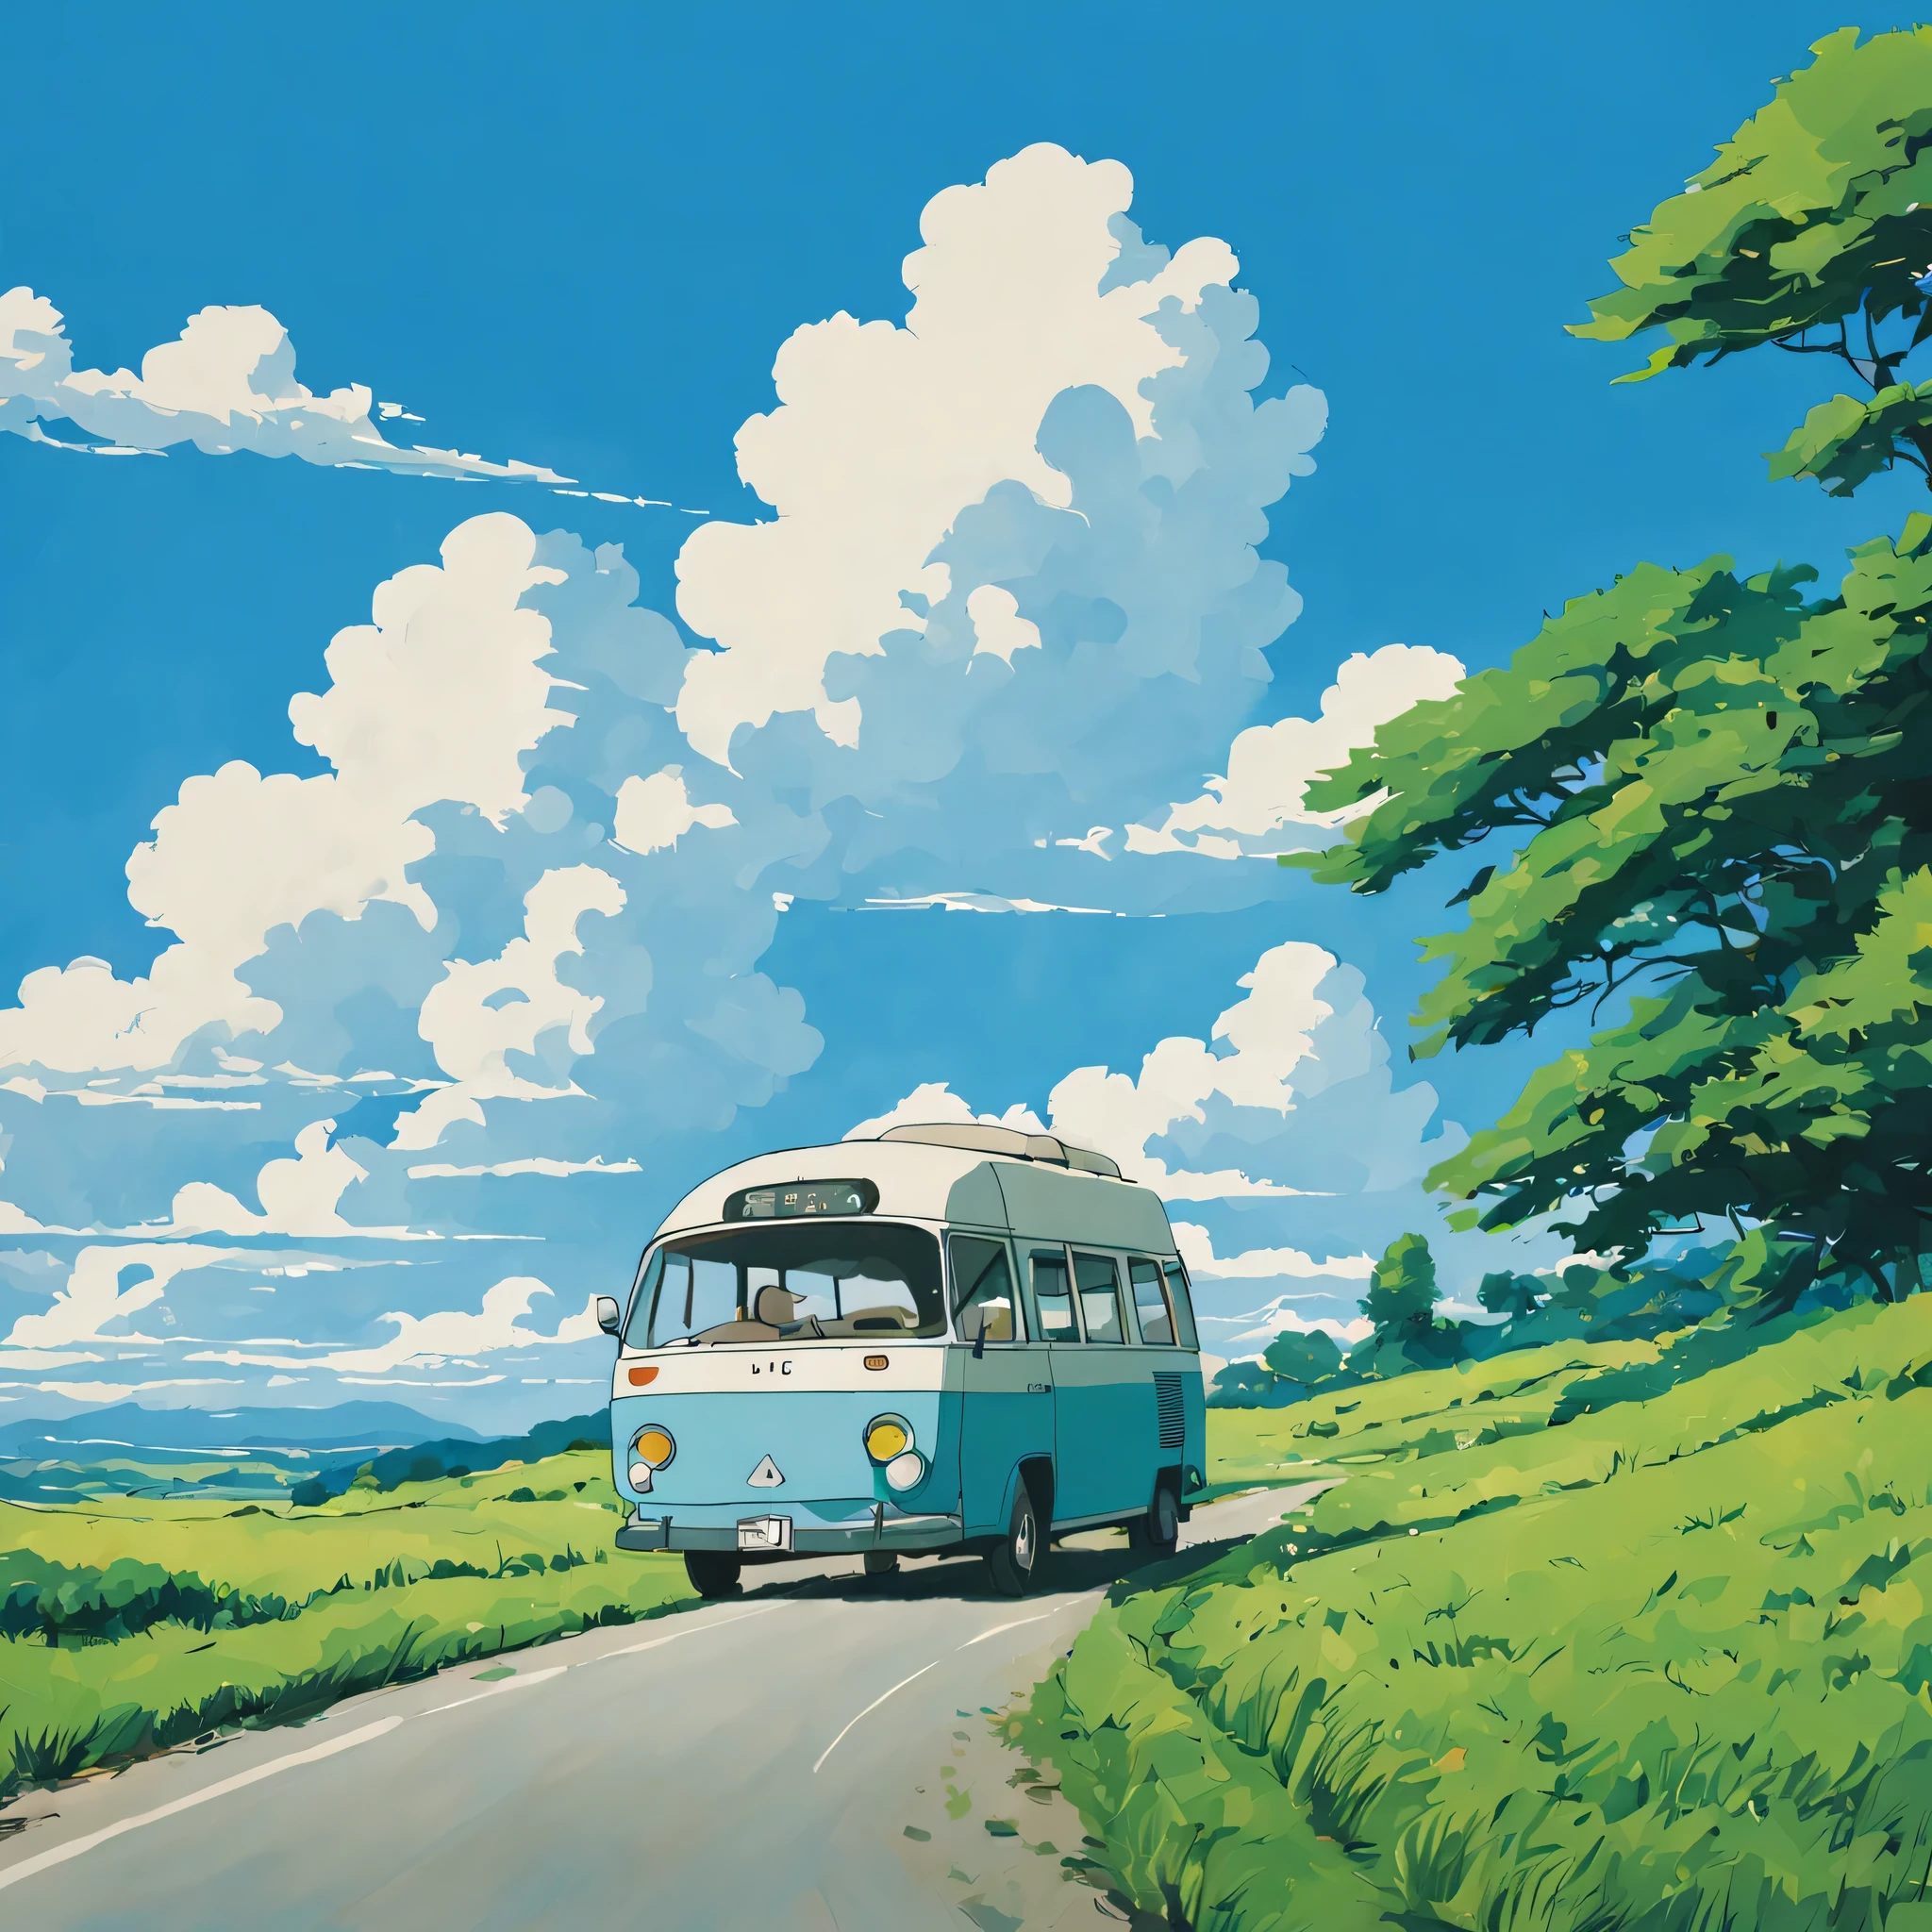 (미니멀리즘:1.4), 길에 미니버스가 있어요, 지브리 스튜디오 아트, 미야자키, 푸른 하늘과 흰 구름이 있는 목장